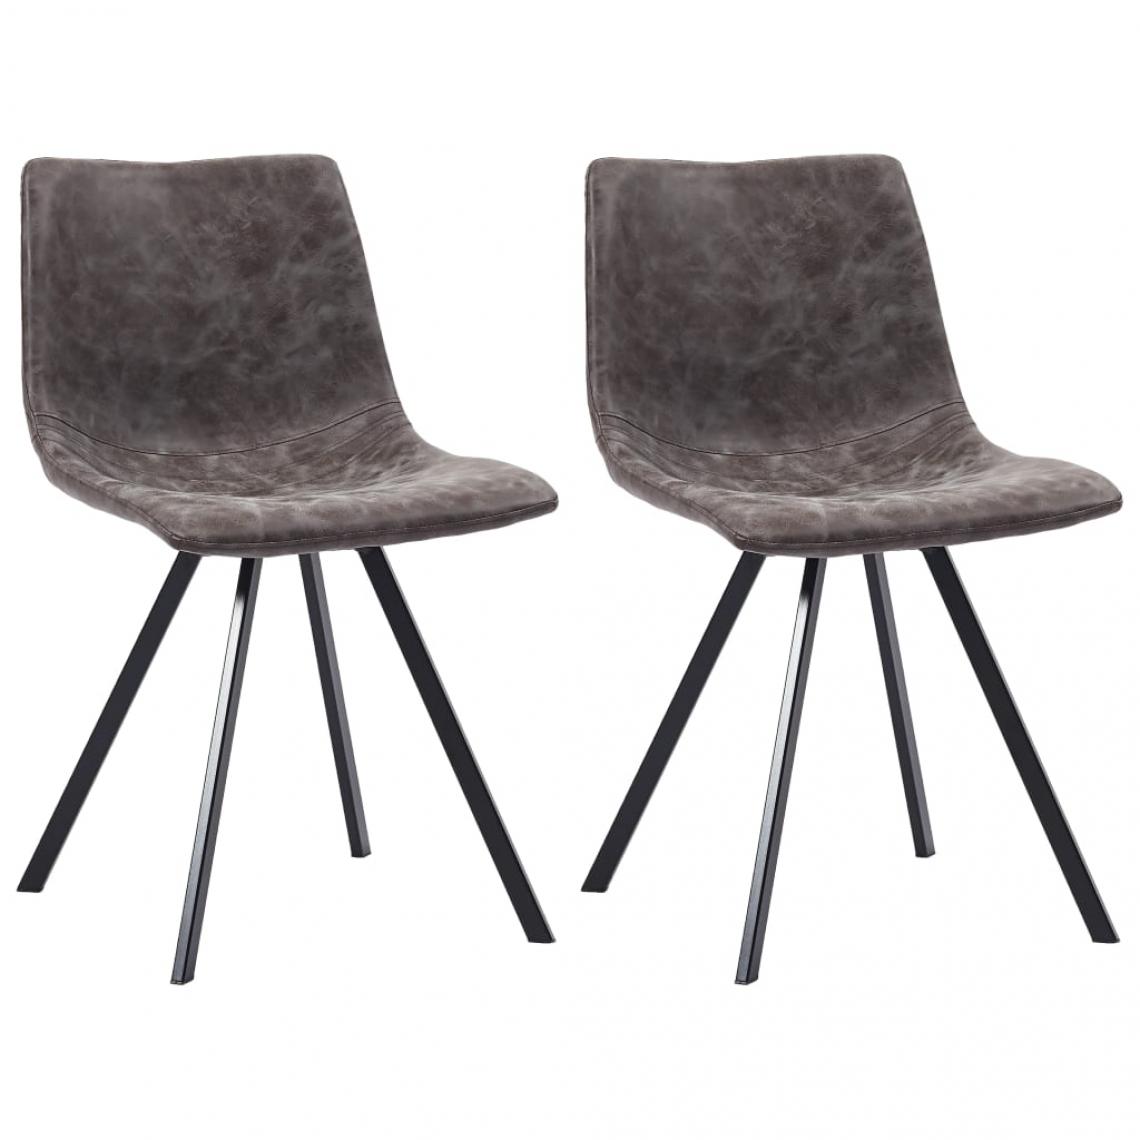 Decoshop26 - Lot de 2 chaises de salle à manger cuisine design moderne similicuir marron CDS020721 - Chaises